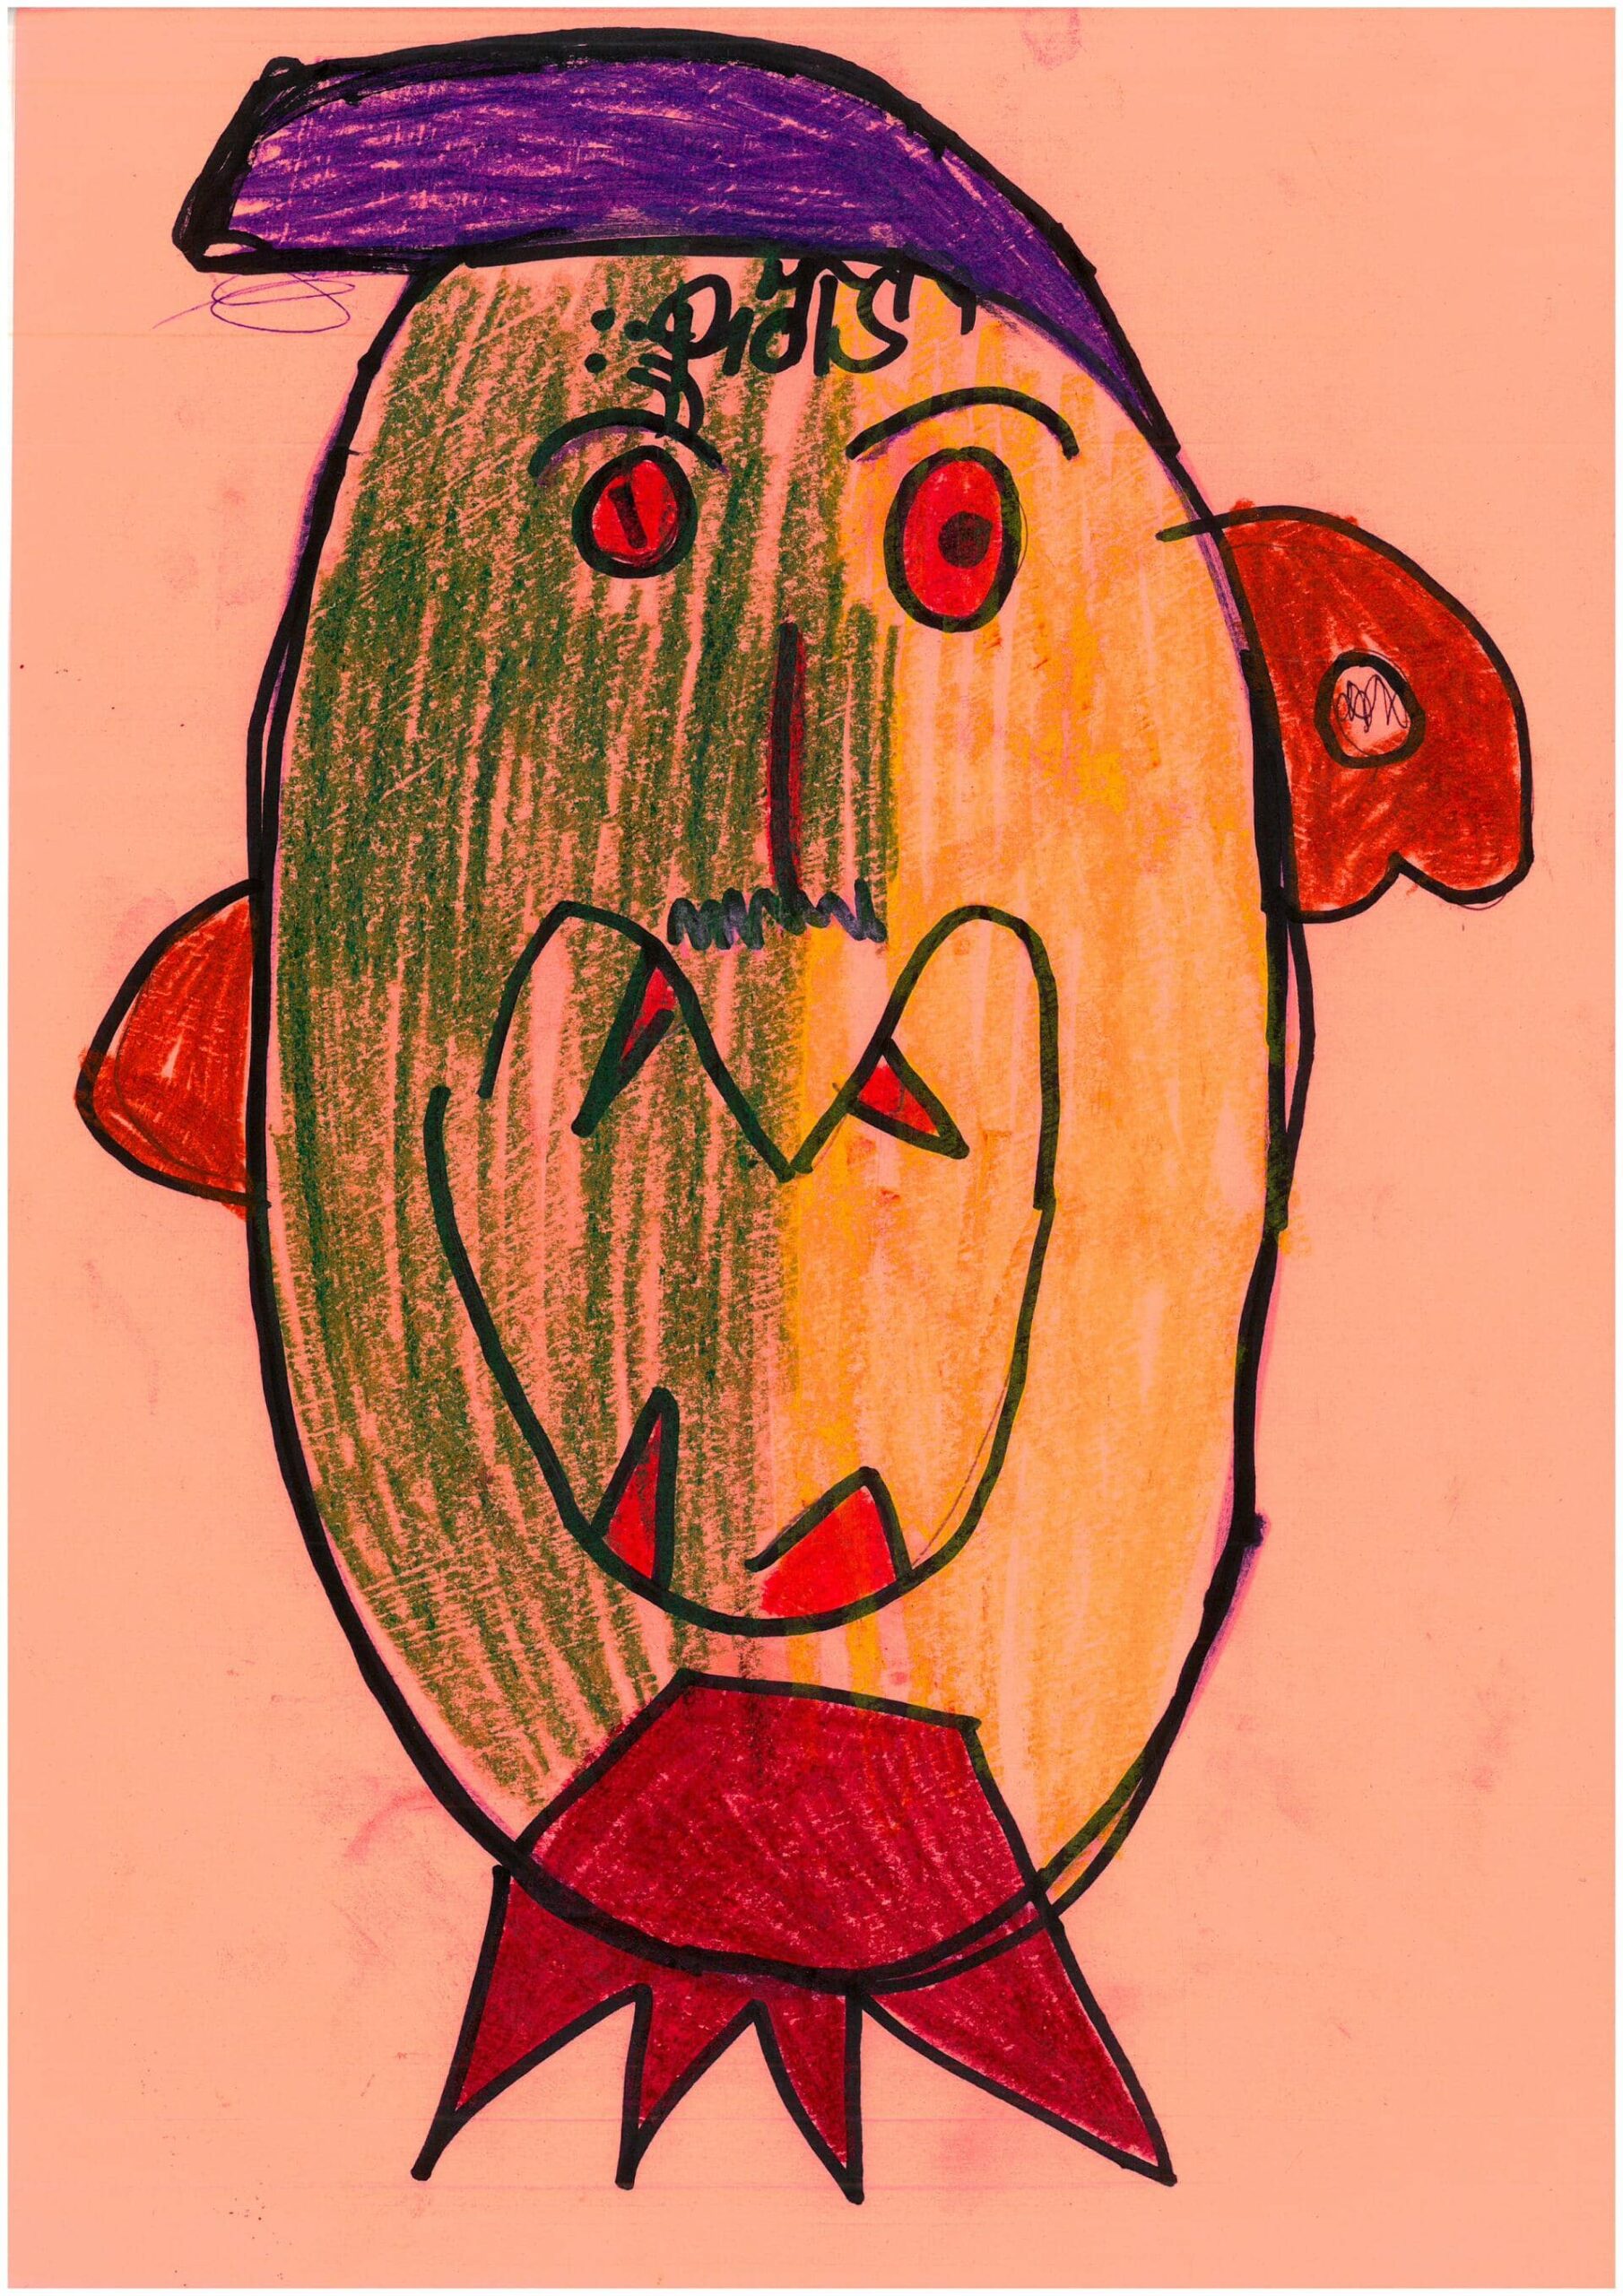 Portret, na którym widać twarz z rozdziawioną buzią. Czerwone oczy, zęby, uszy i bródka kontrastują z zielenią twarzy i kolorową fryzurą